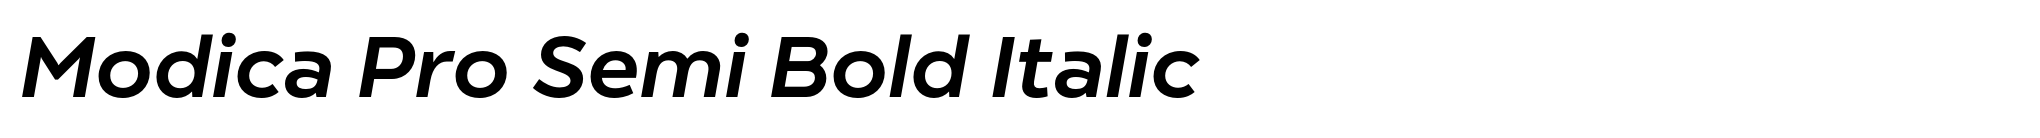 Modica Pro Semi Bold Italic image